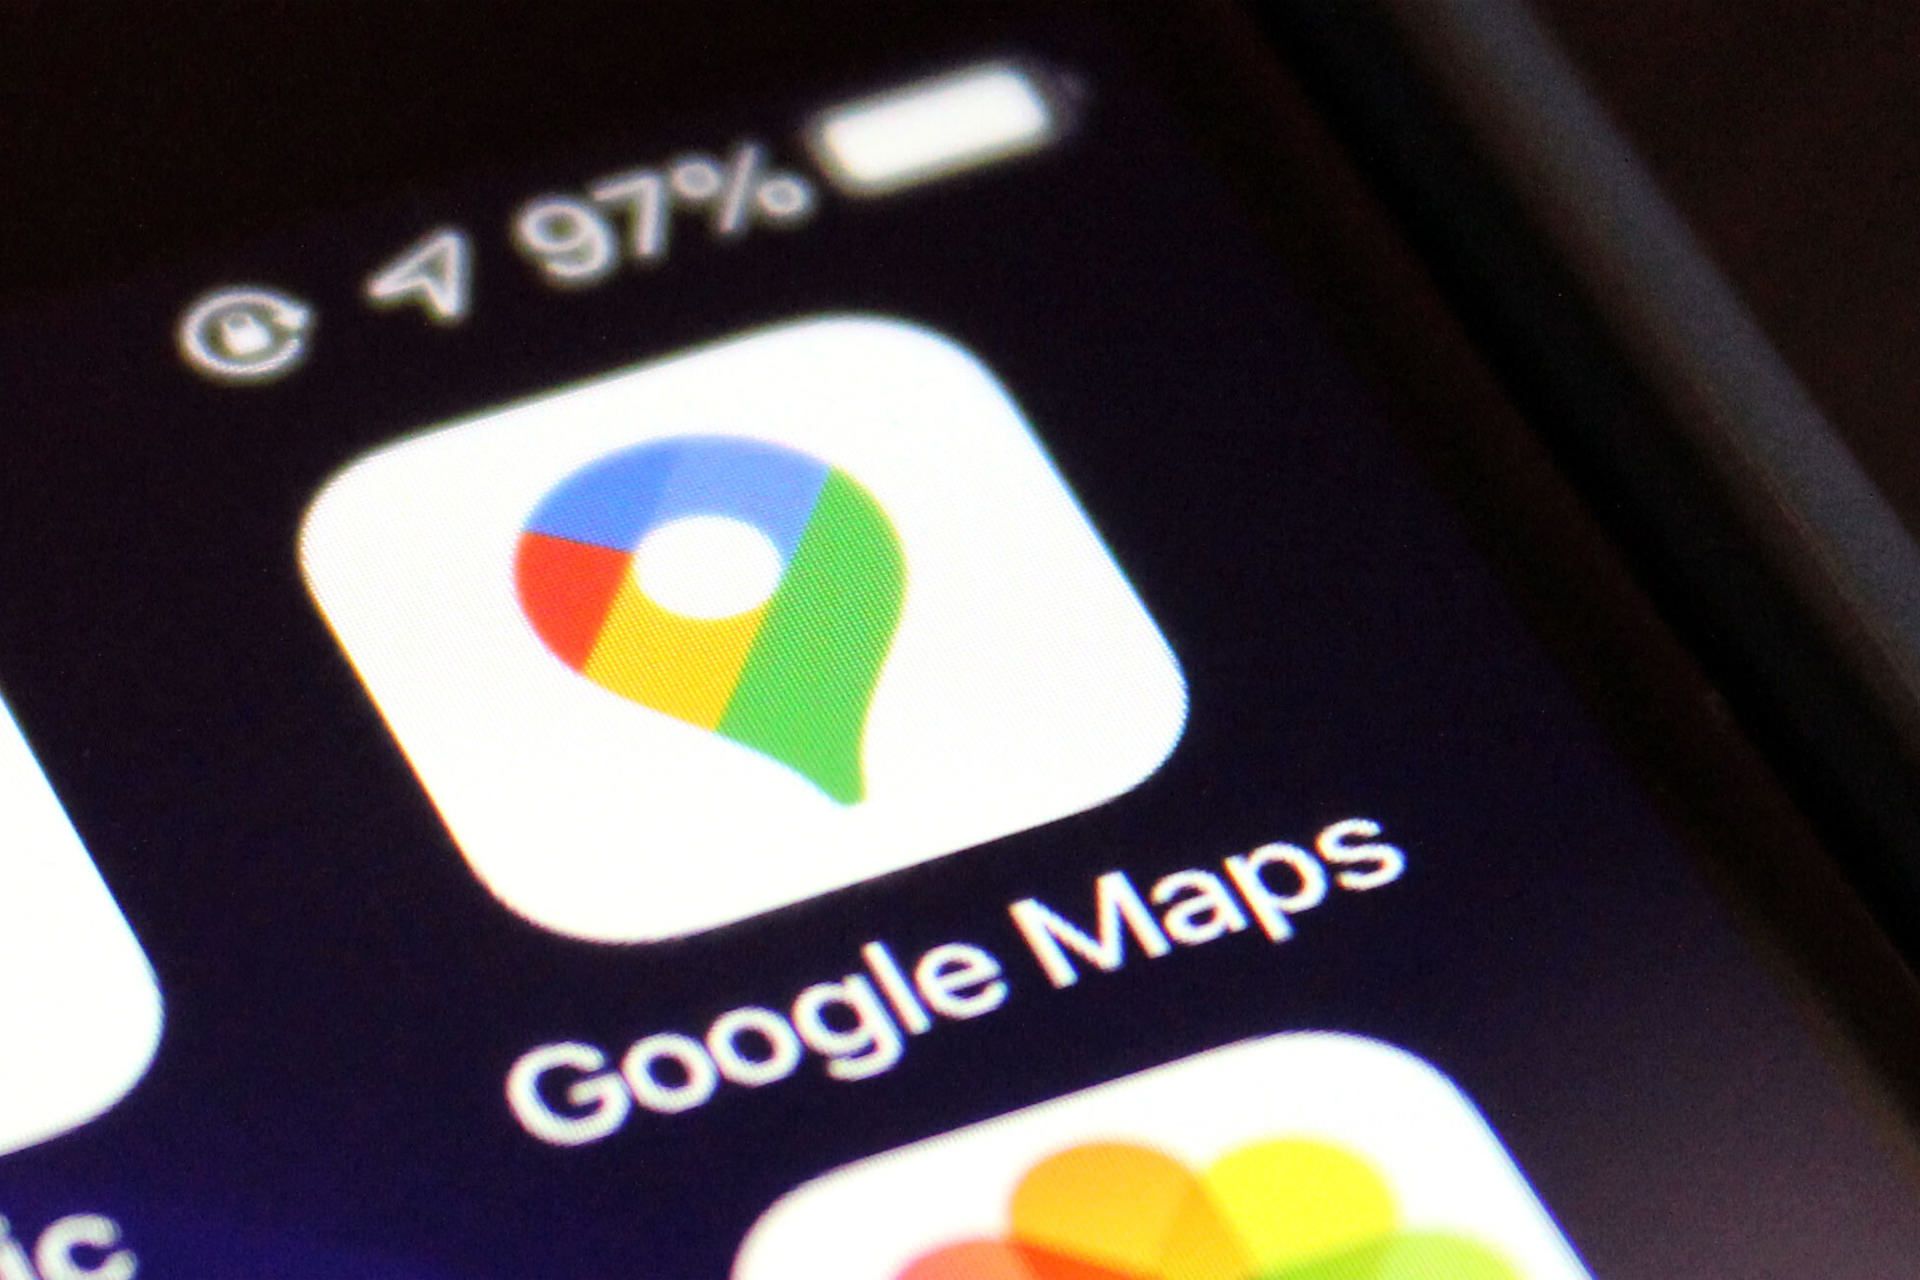 آیکون نسخه iOS گوگل مپس / Google Maps روی صفحه آیفون از نمای نزدیک